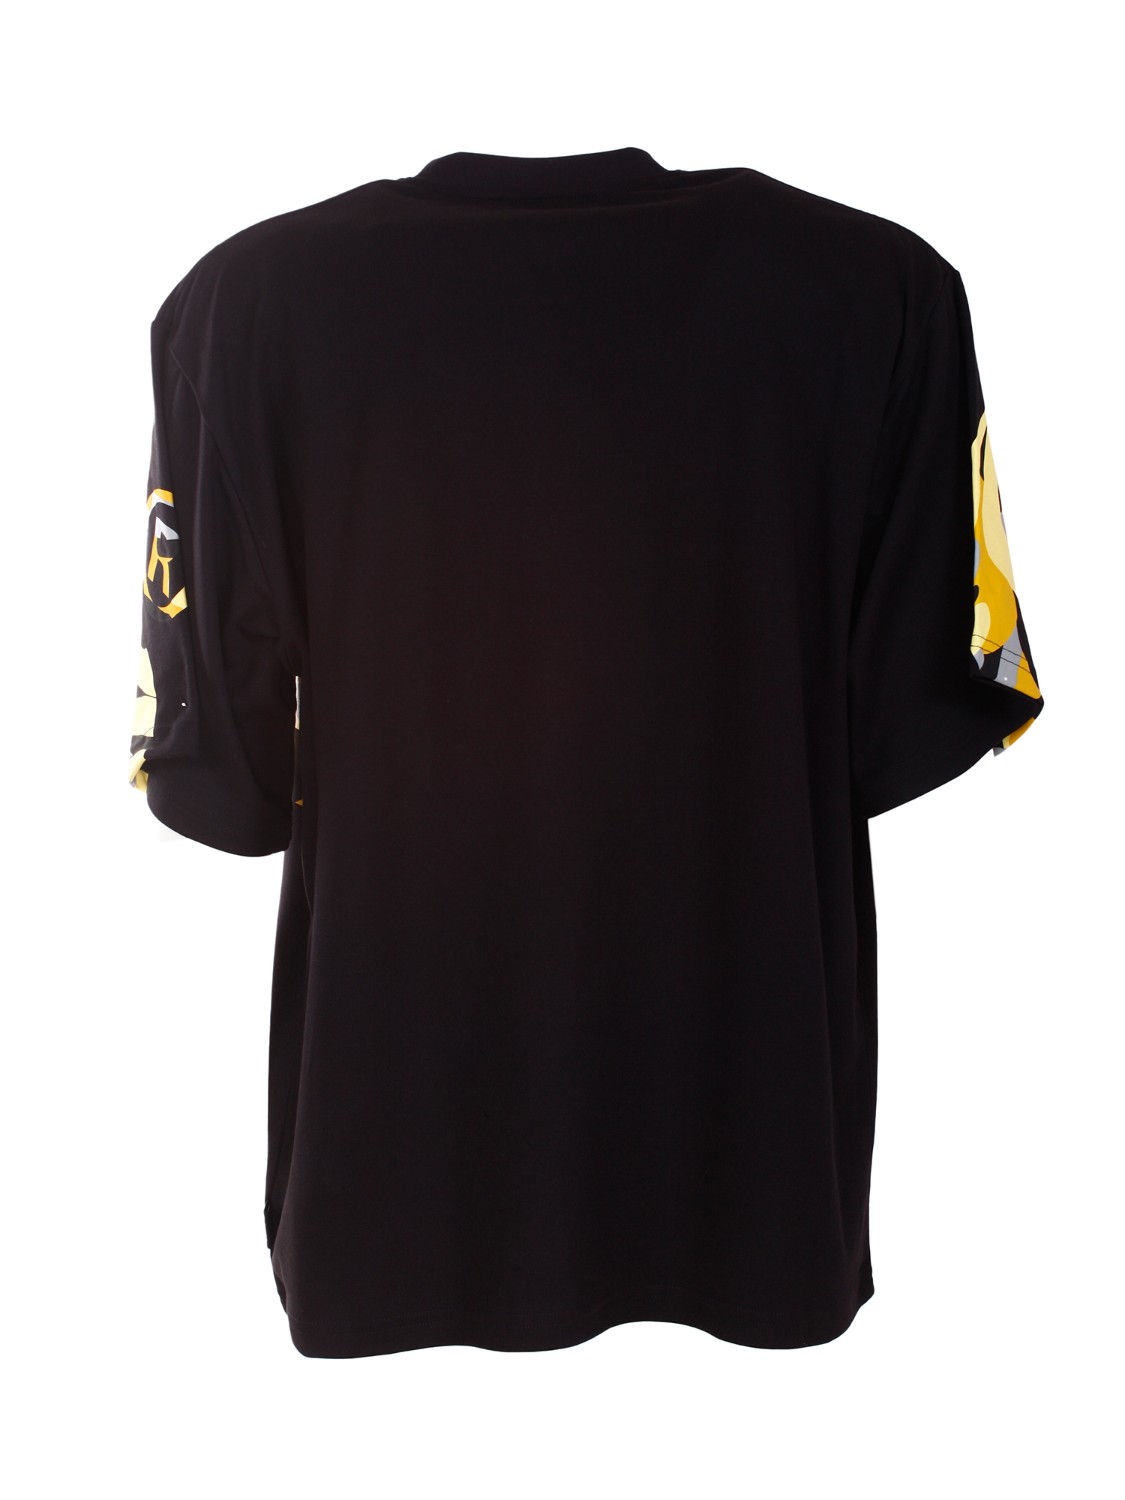 shop GCDS Saldi Maglia: GCDS t-shirt girocollo con maxi logo frontale.
Oversize fit.
Composizione: 100% cotone.
Fabbricato in Italia.. CC22M13S104-04 number 8134759